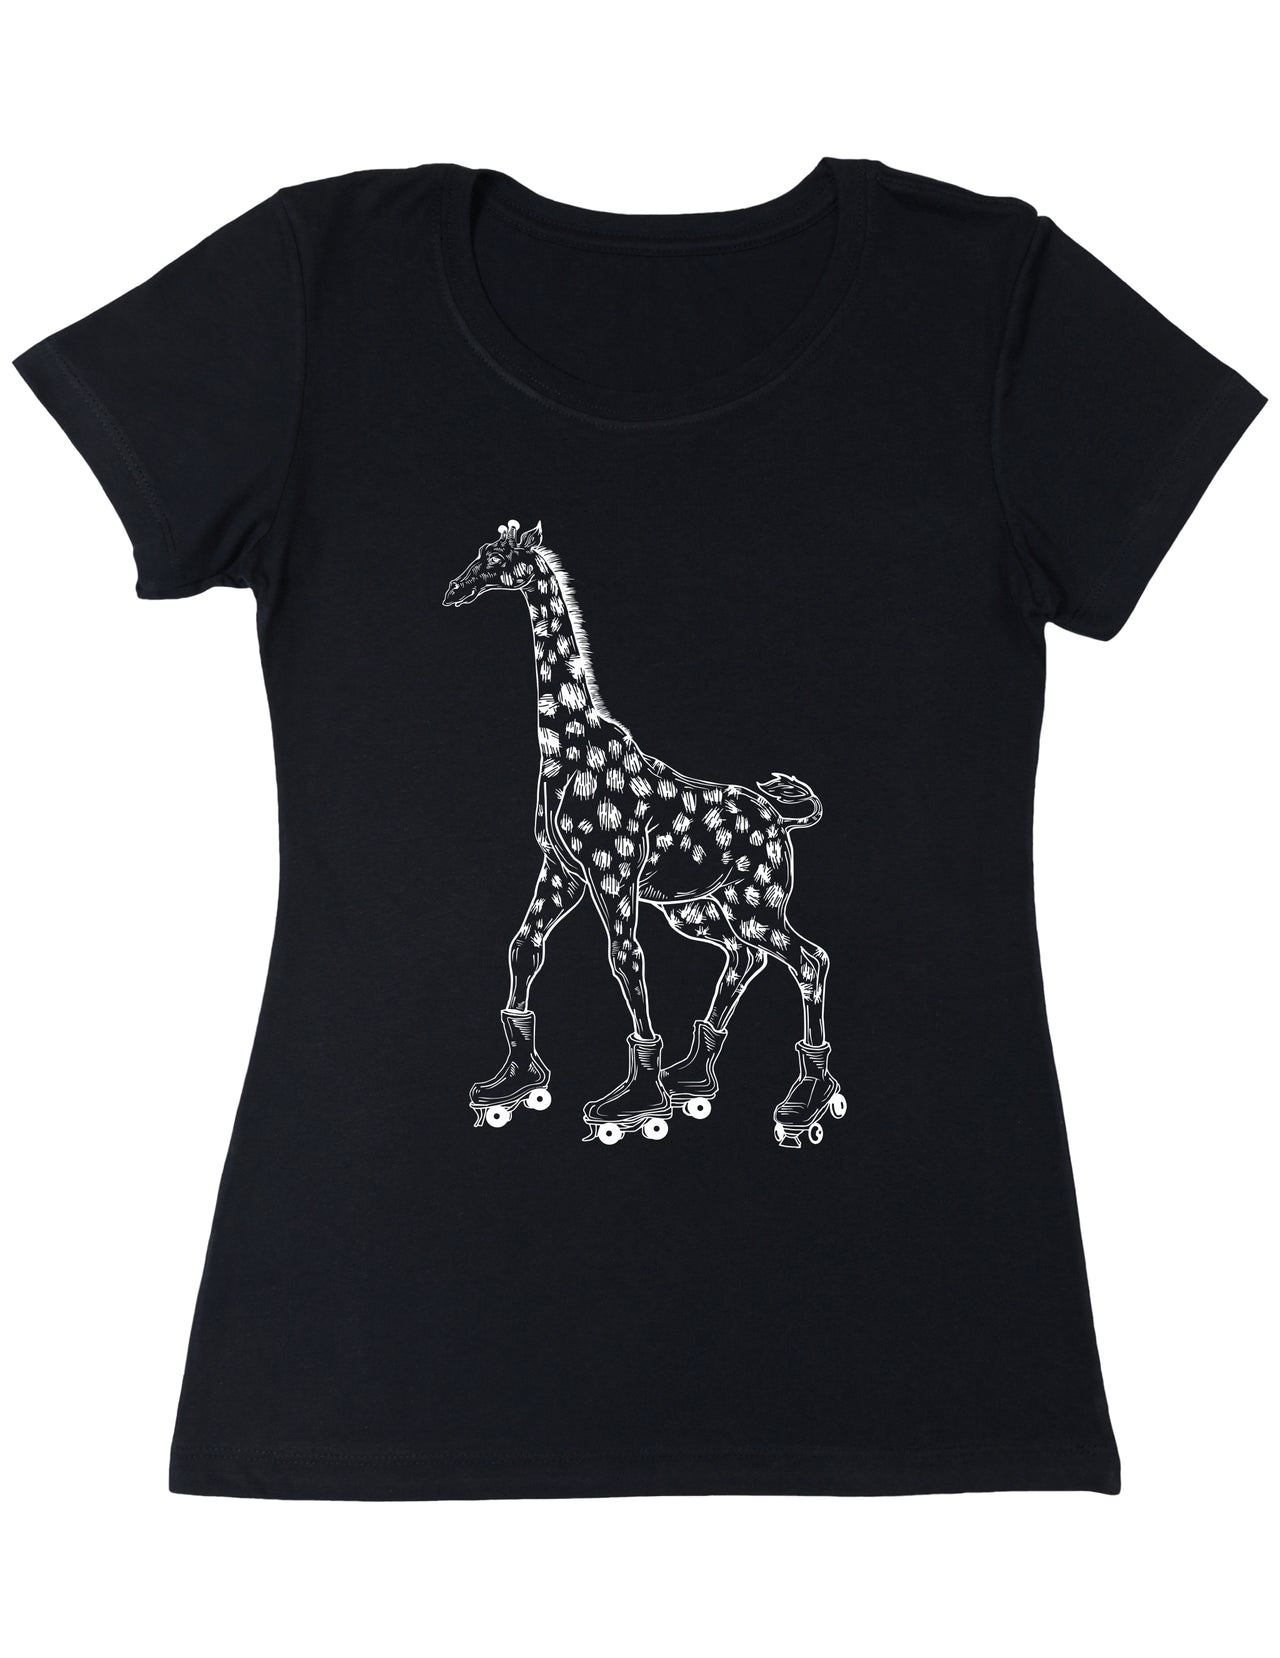 SEEMBO Giraffe Skater Skating Roller Skates Women's Poly-Cotton T-Shirt